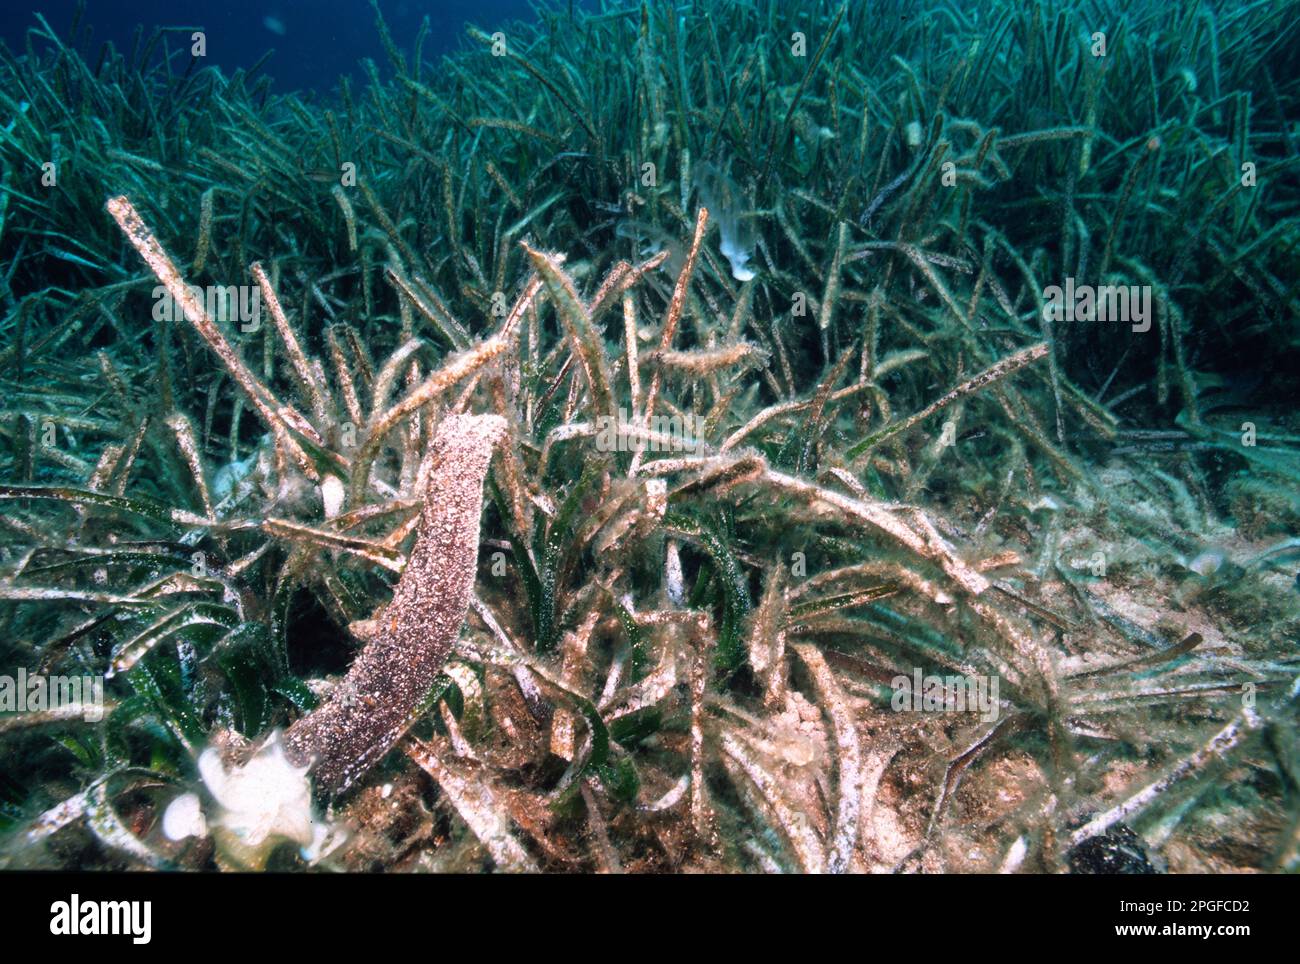 Concombre de mer tubulaire, pendant le frai, Oloturia (Holothuria tubulosa) épouse all'esterno il liquido spermatico. Capo Caccia. Alghero, Sardaigne. Banque D'Images